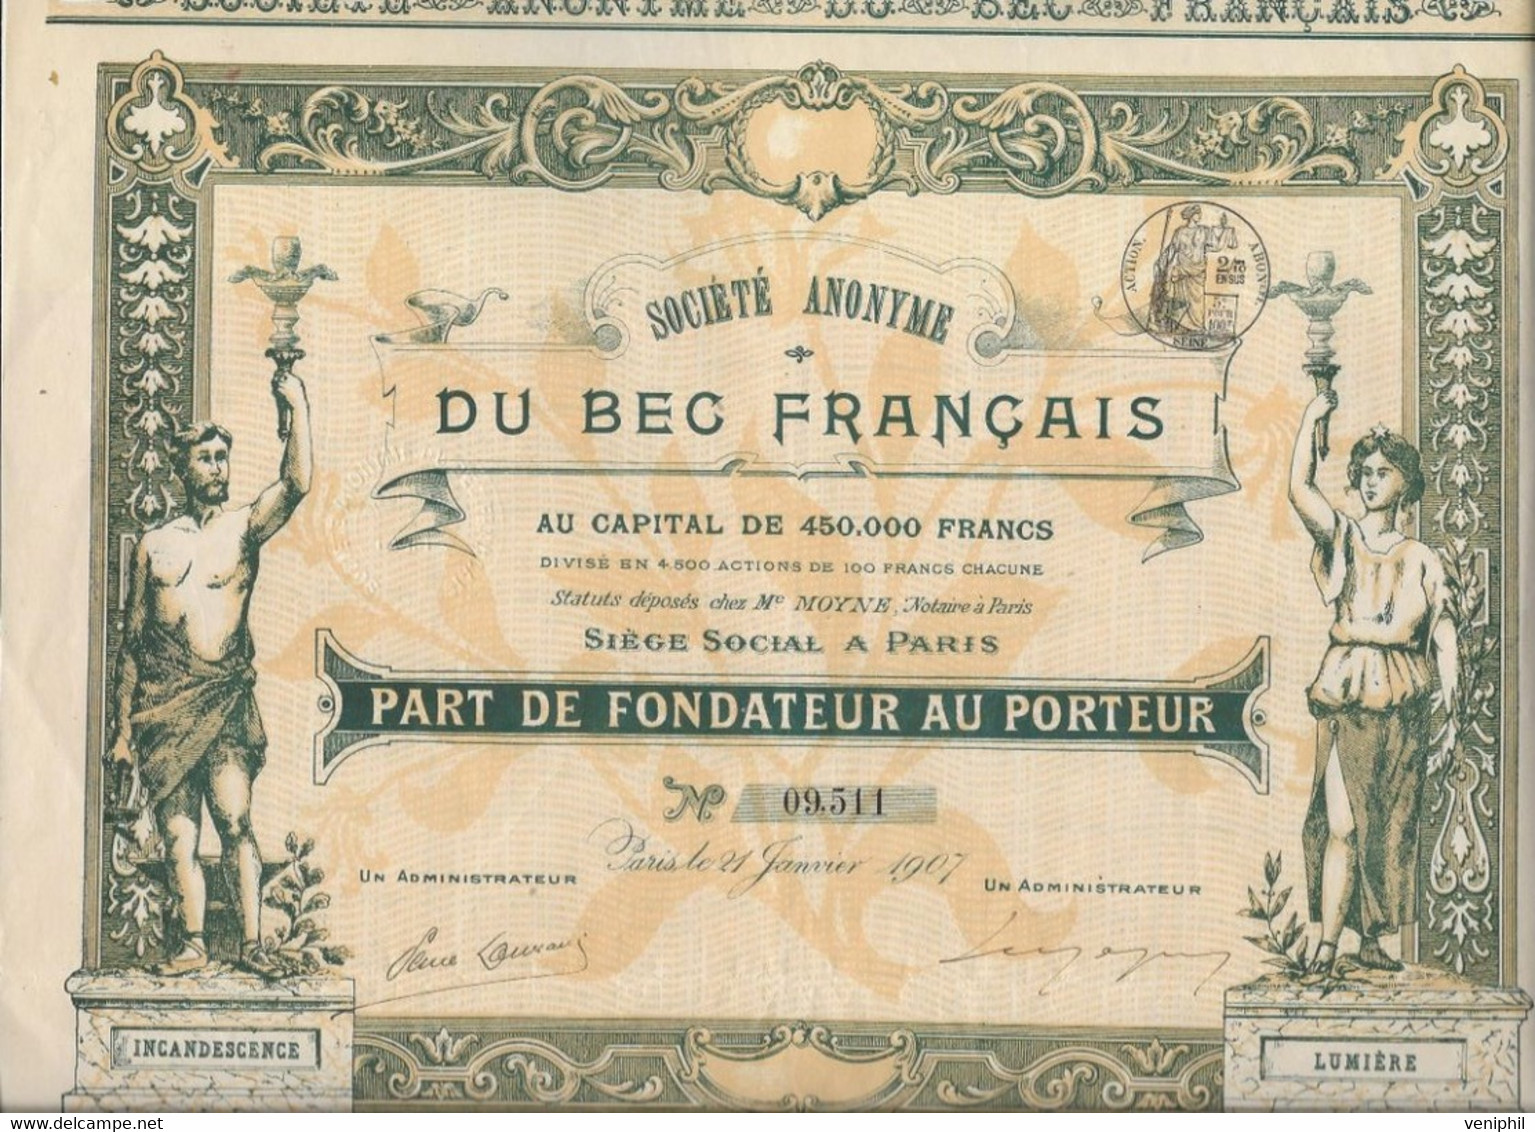 SOCIETE DU BEC FRANCAIS -PART DE FONDATEUR -BELLE ILLUSTRATION - ANNEE 1907 - Electricity & Gas